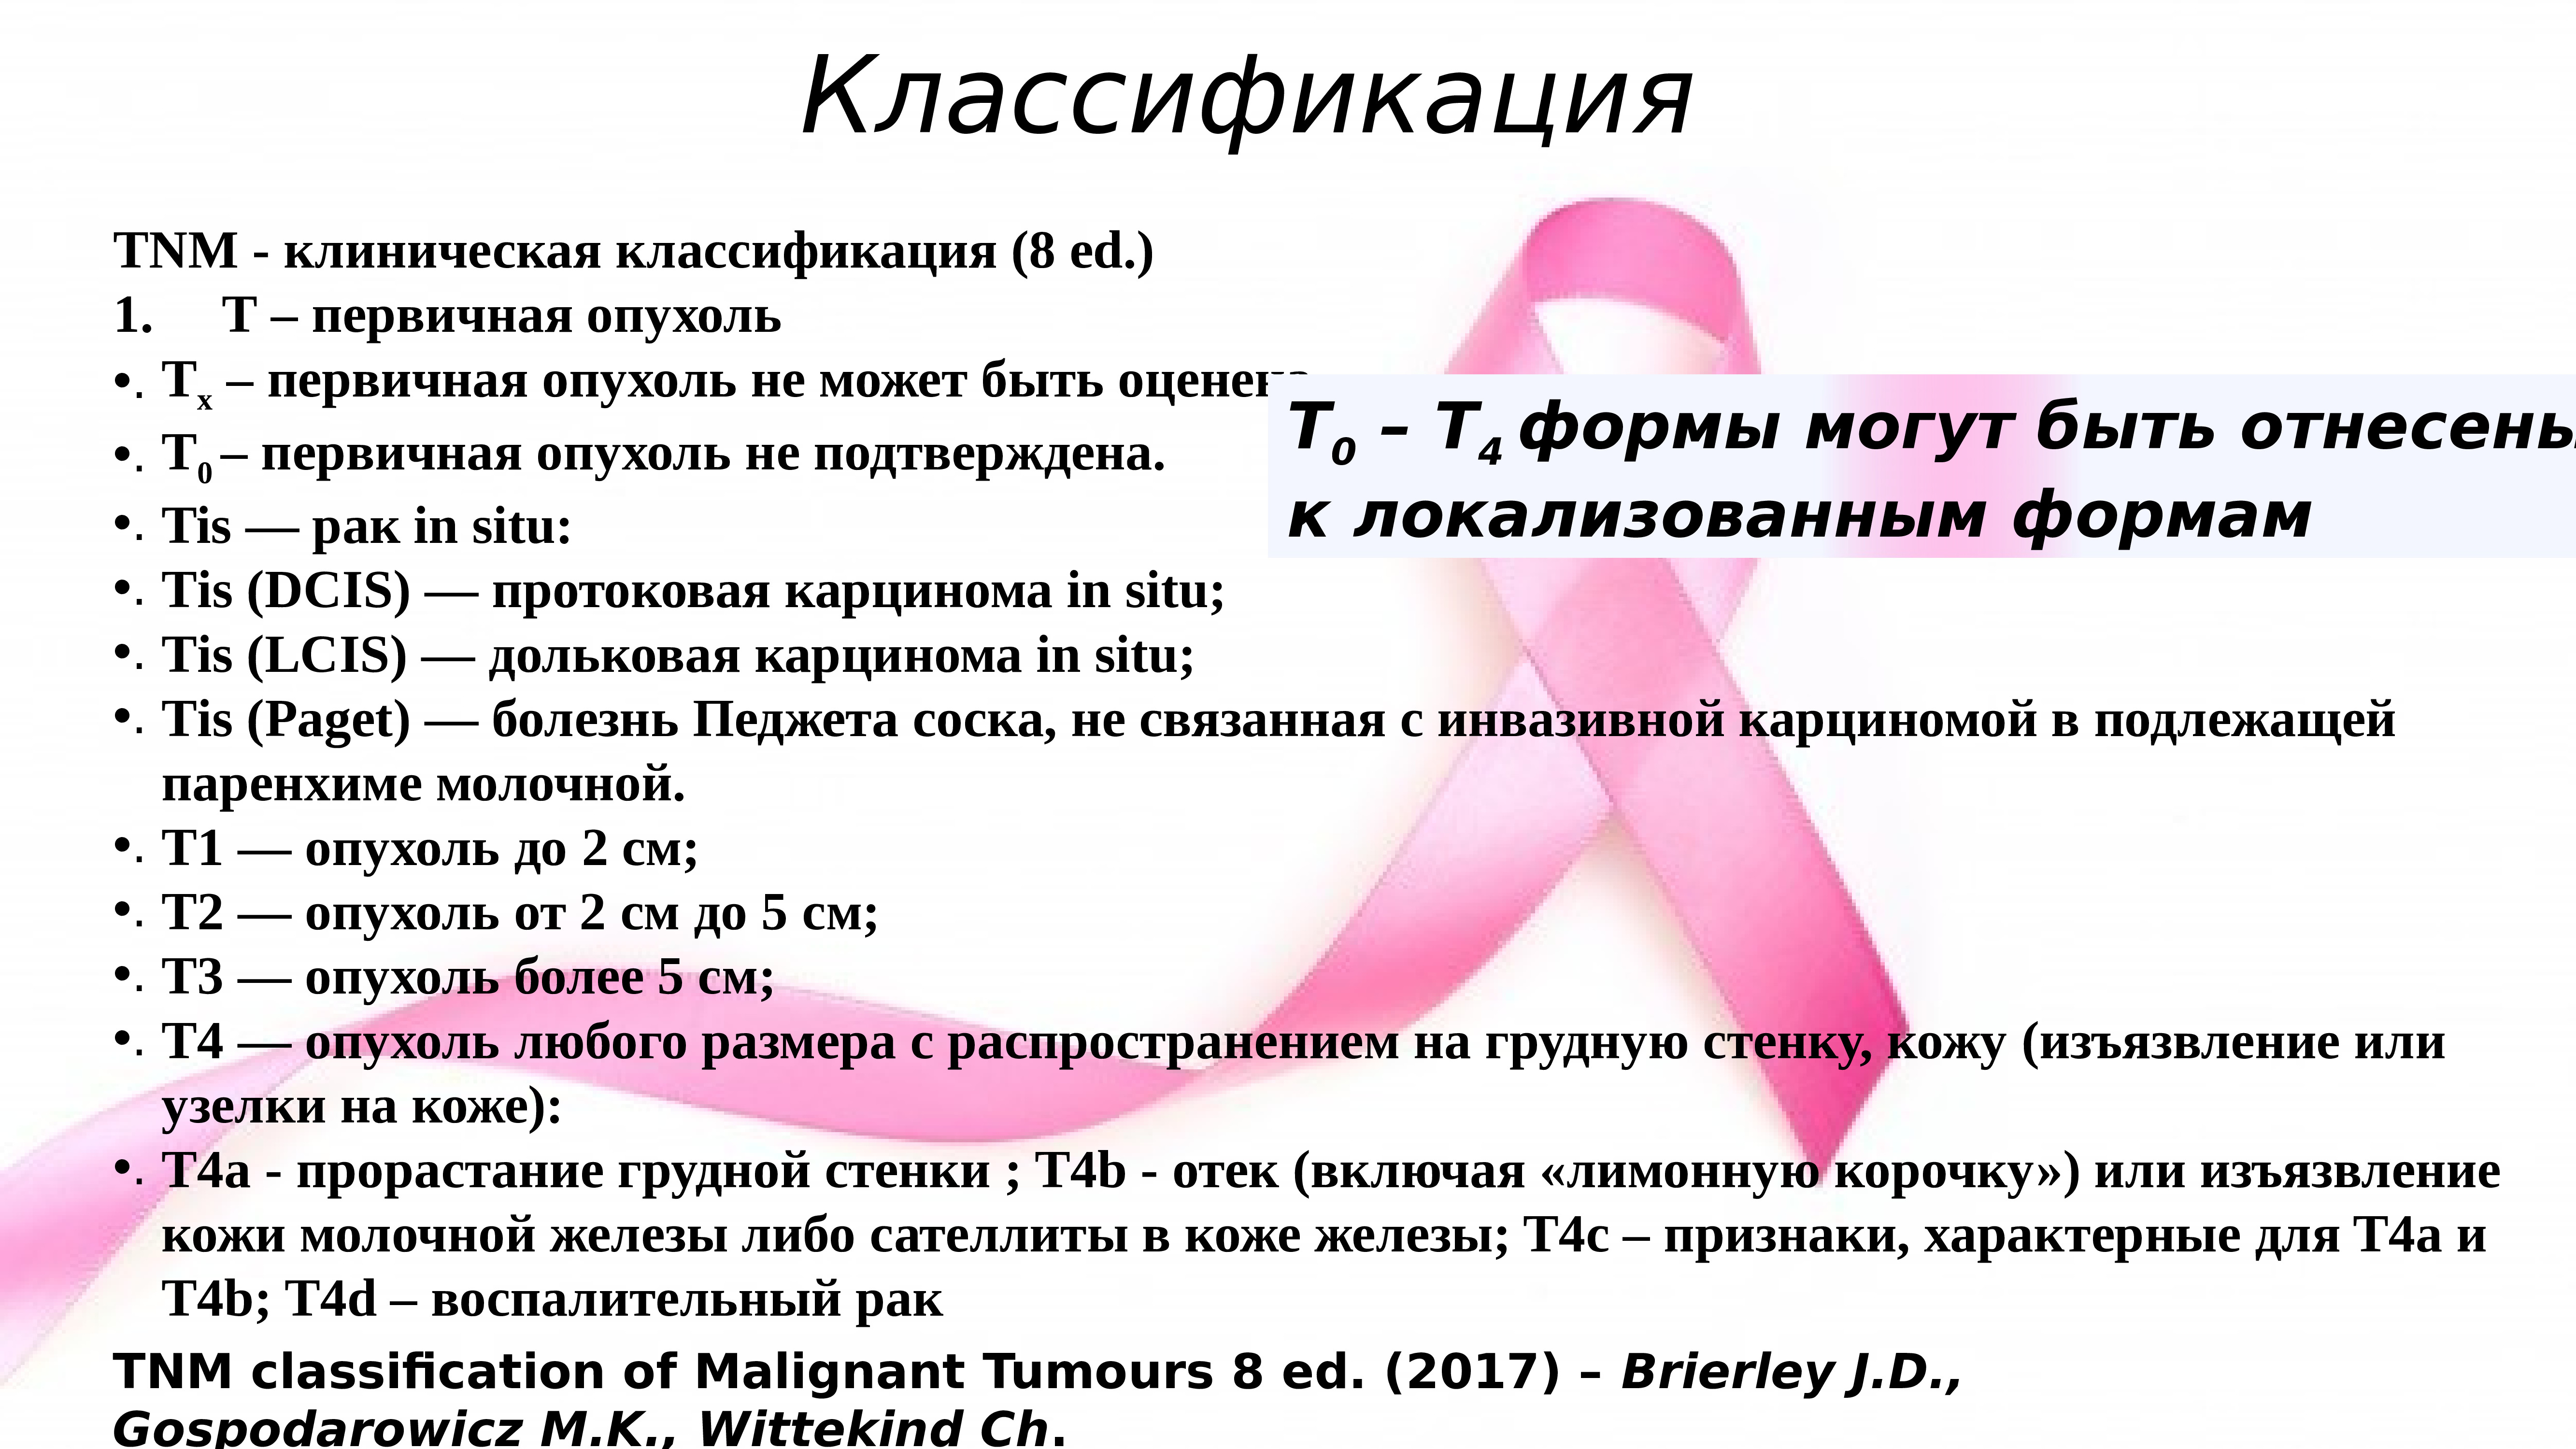 симптомы при раке груди у женщин фото 92